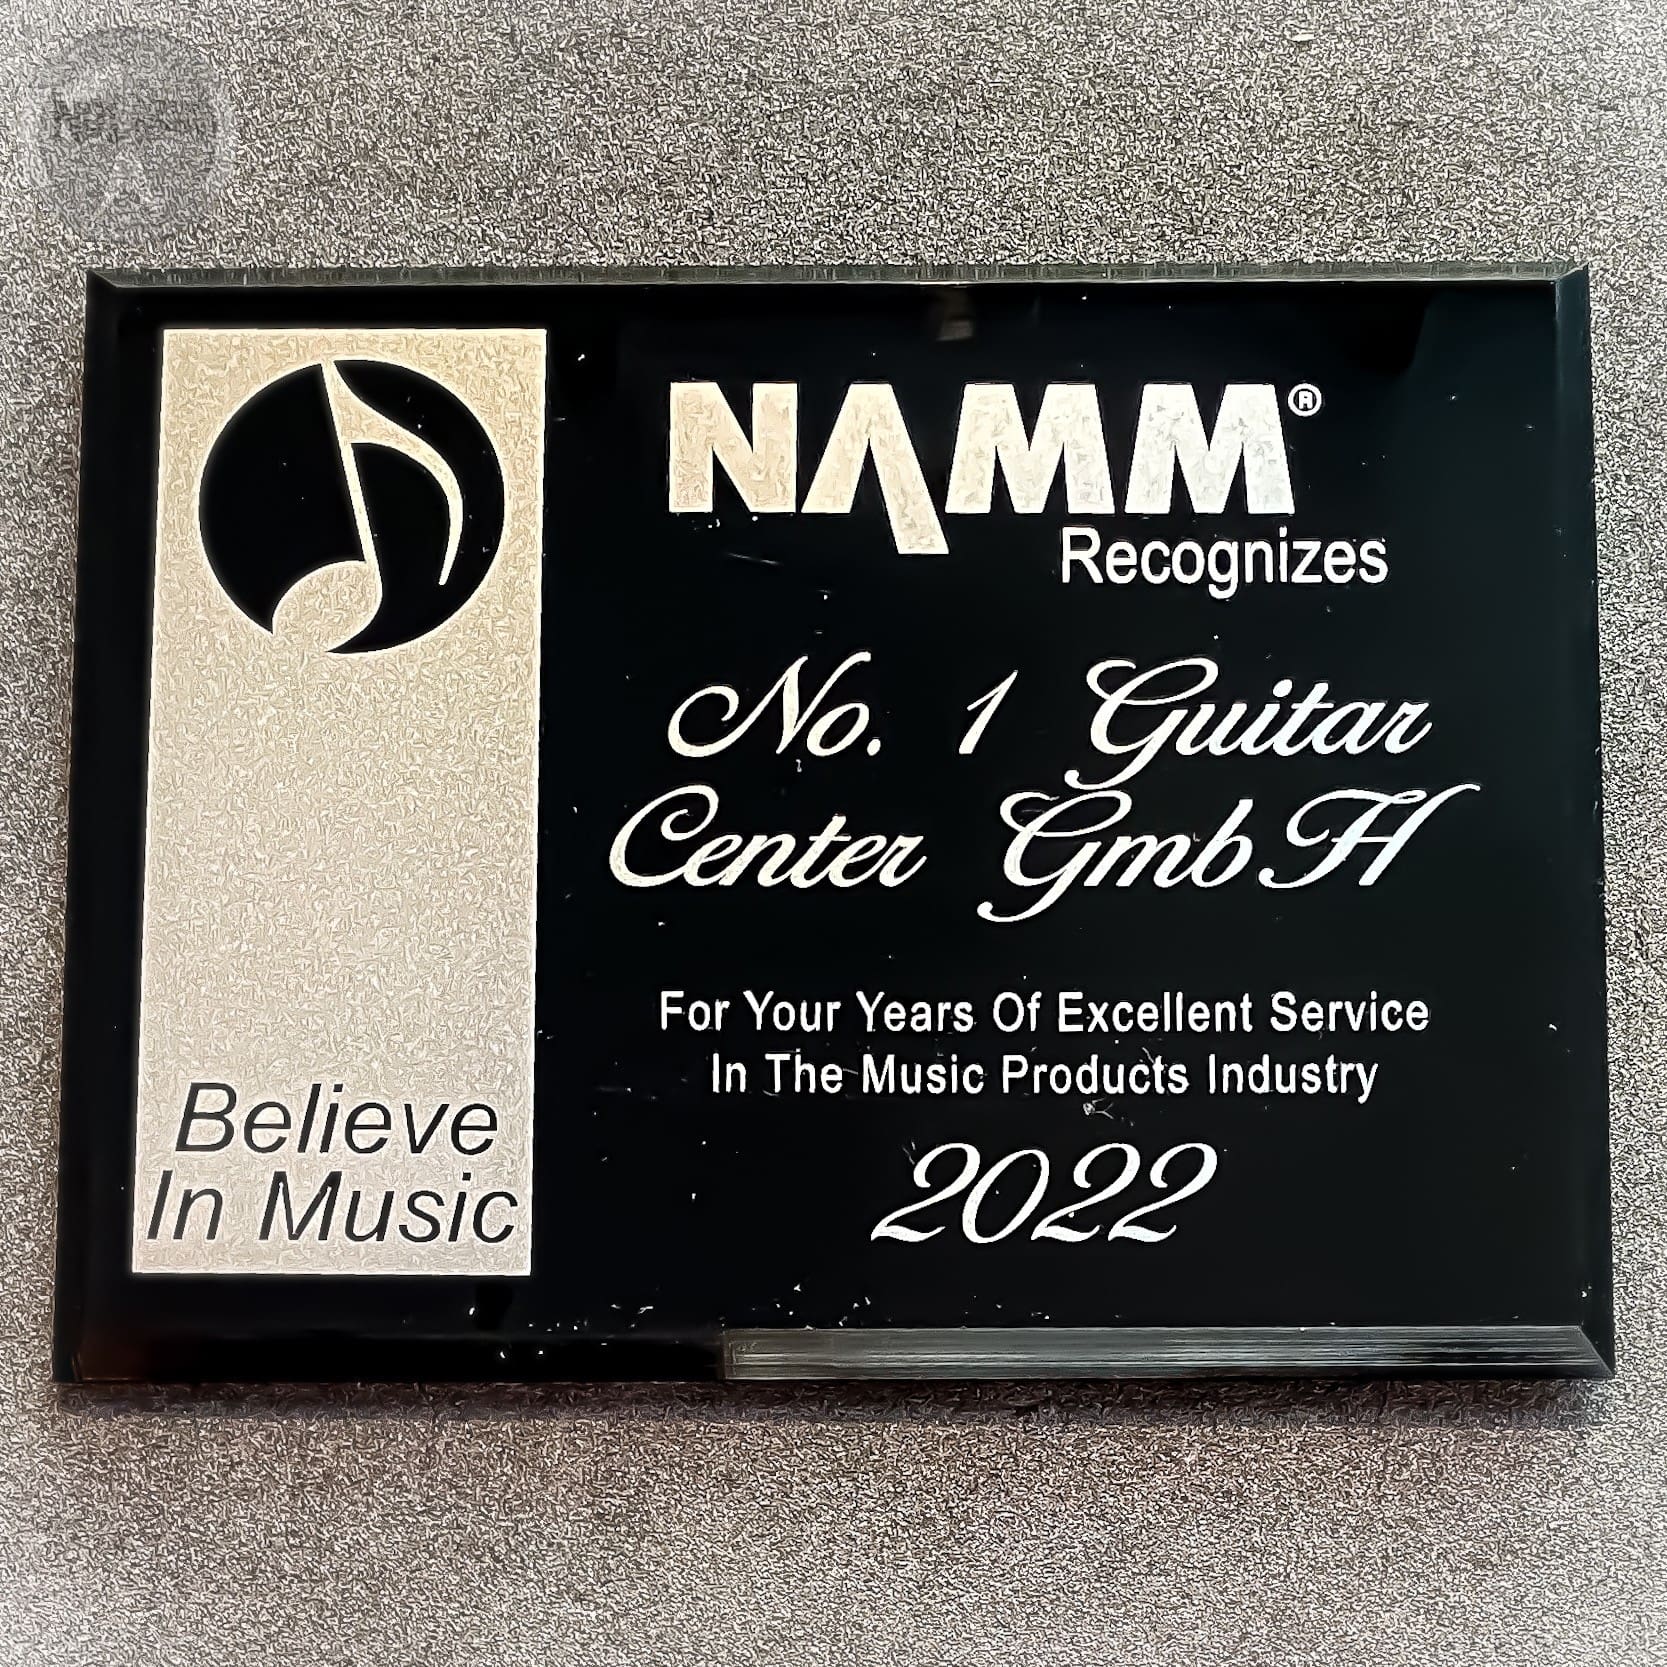 guitar center 2 - News aus der Musikwelt: „Die No.1 Guitar Center GmbH wird von der NAMM in den USA ausgezeichnet“